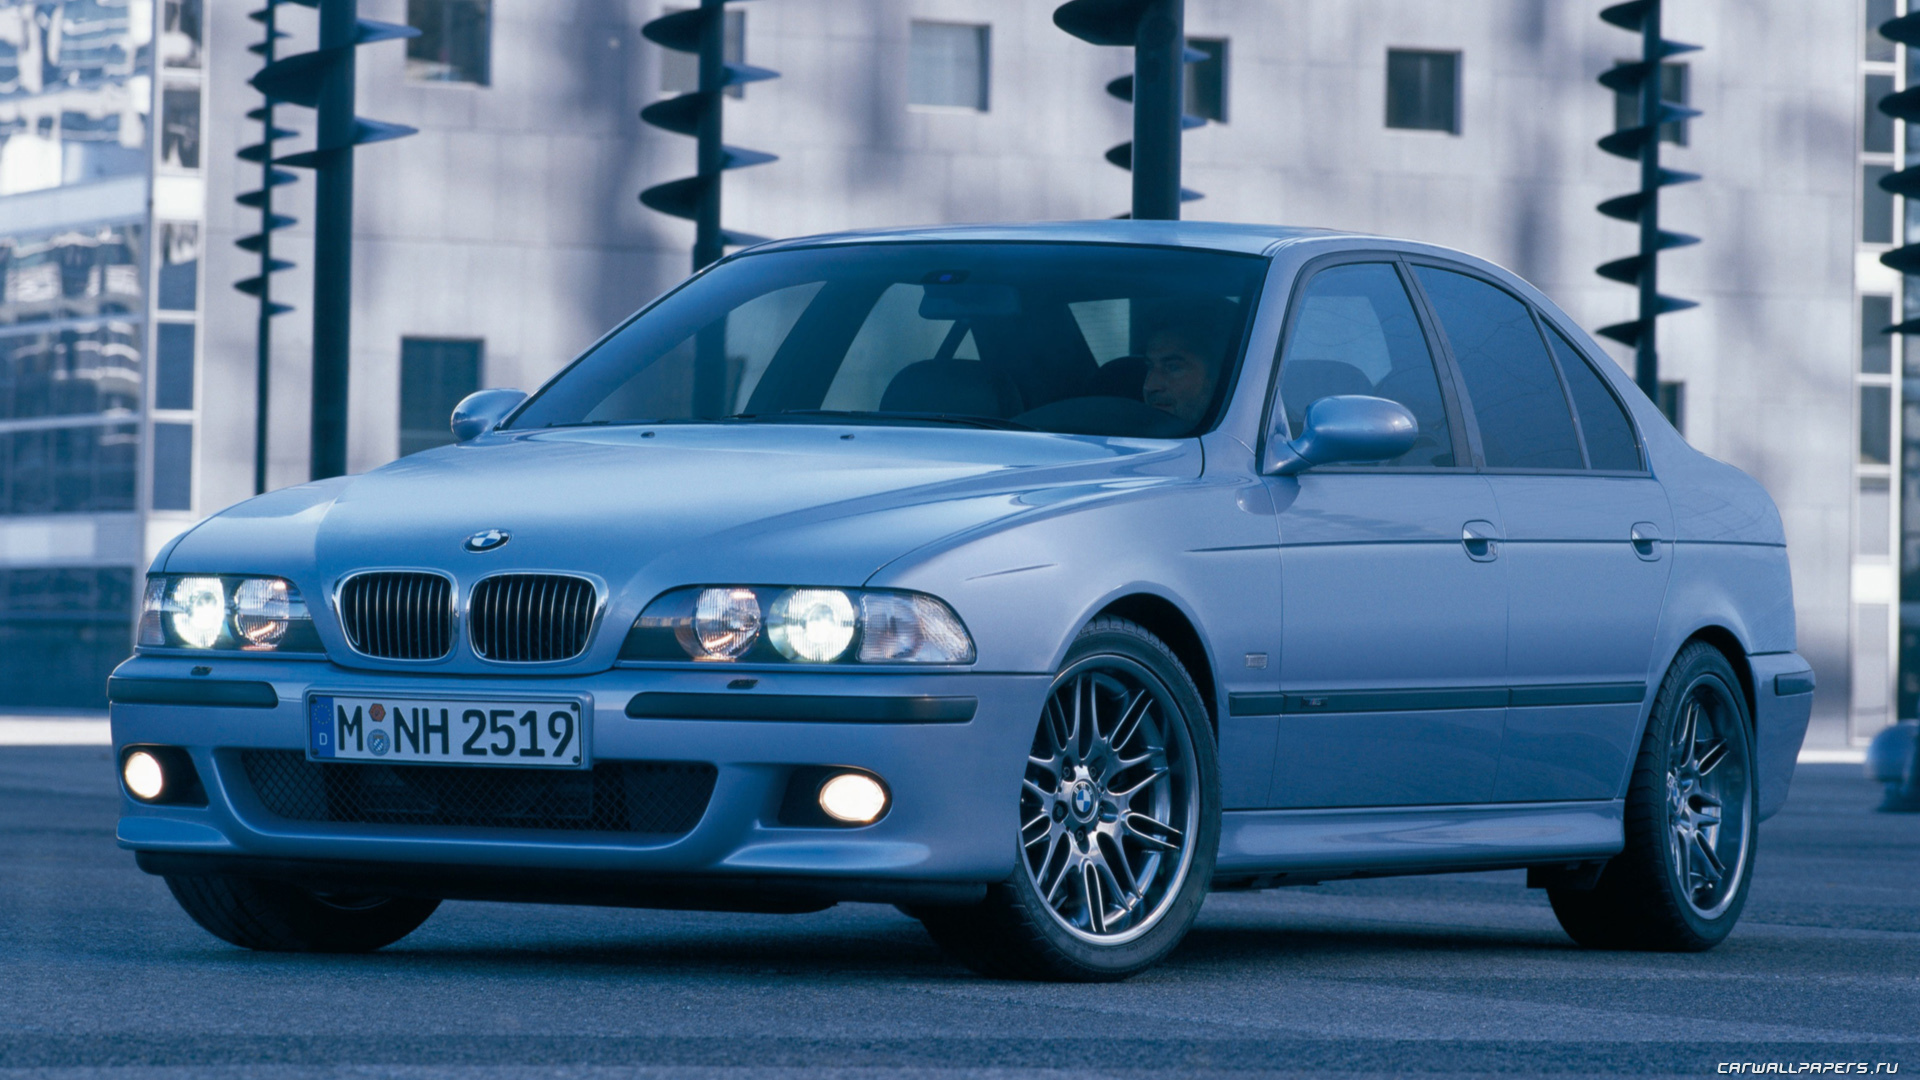 BMW 5 Series e39 m5